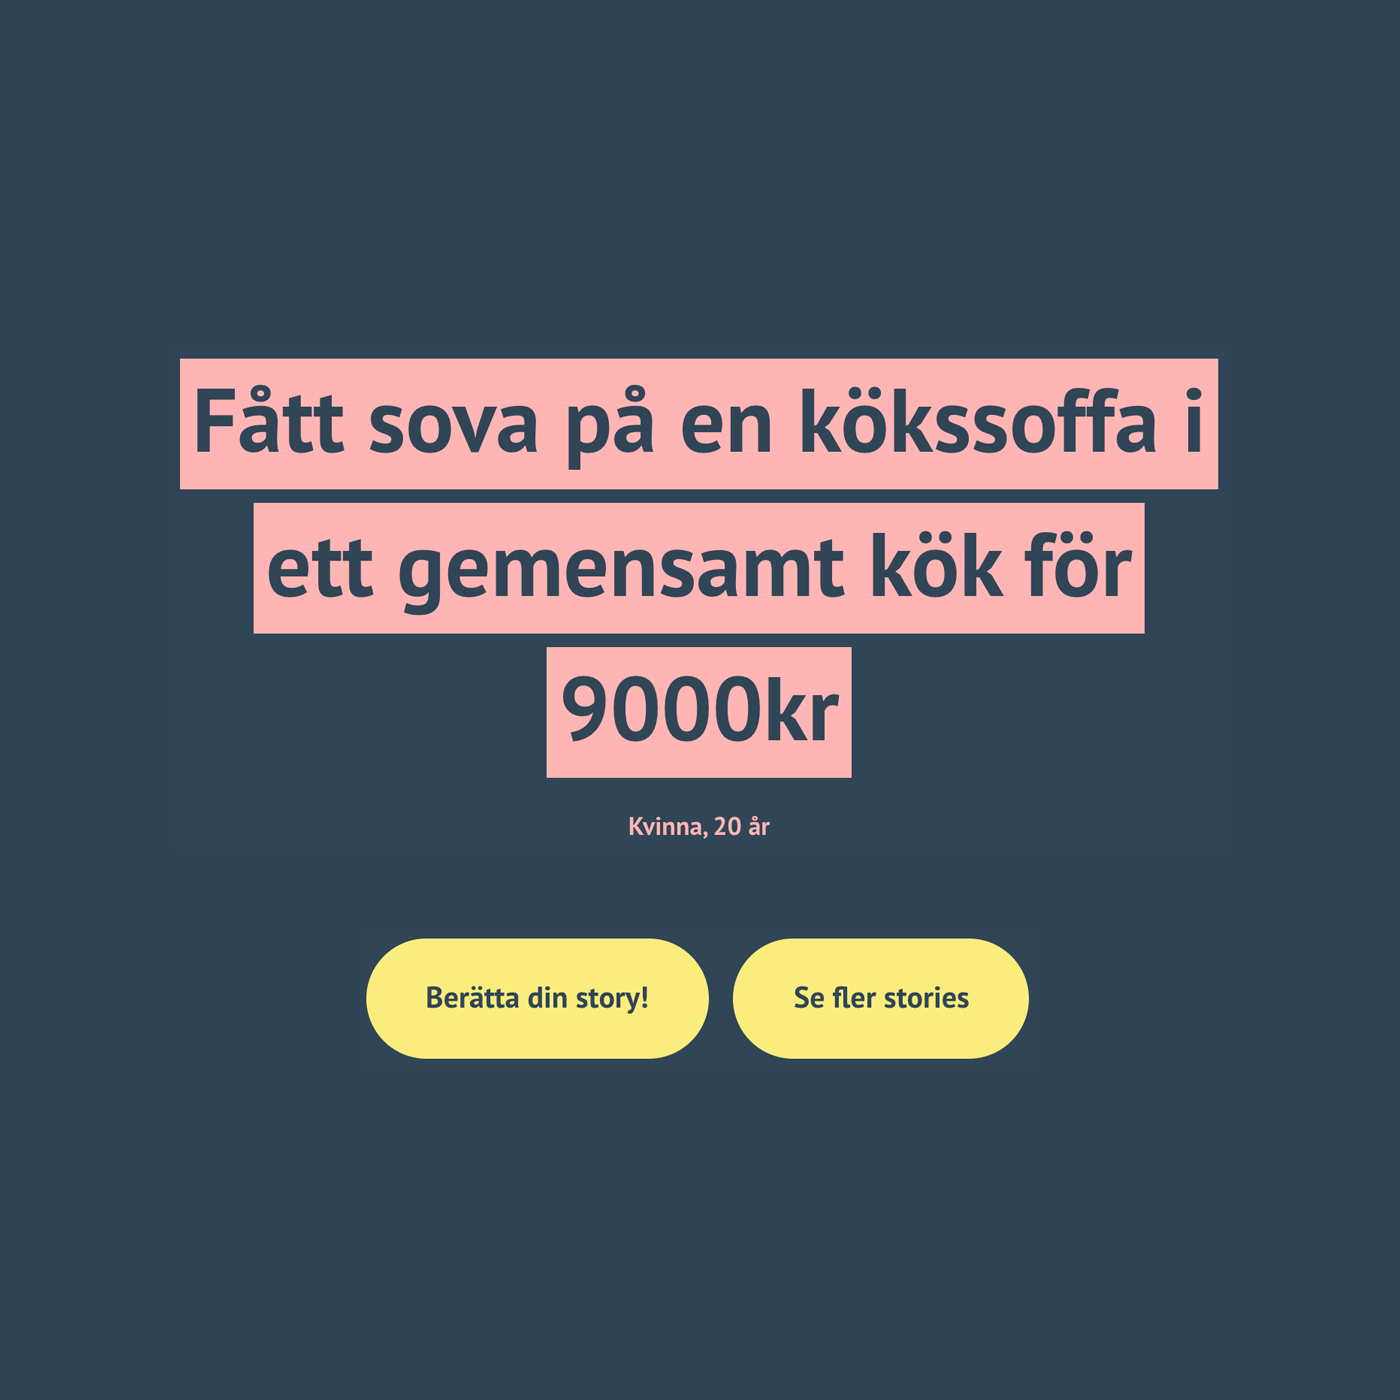 Citat "Fått sova på en kökssoffa i ett gemensamt kök för 9000kr" - en av alla berättelser från en ung person i bostadsbristens Stockholm.